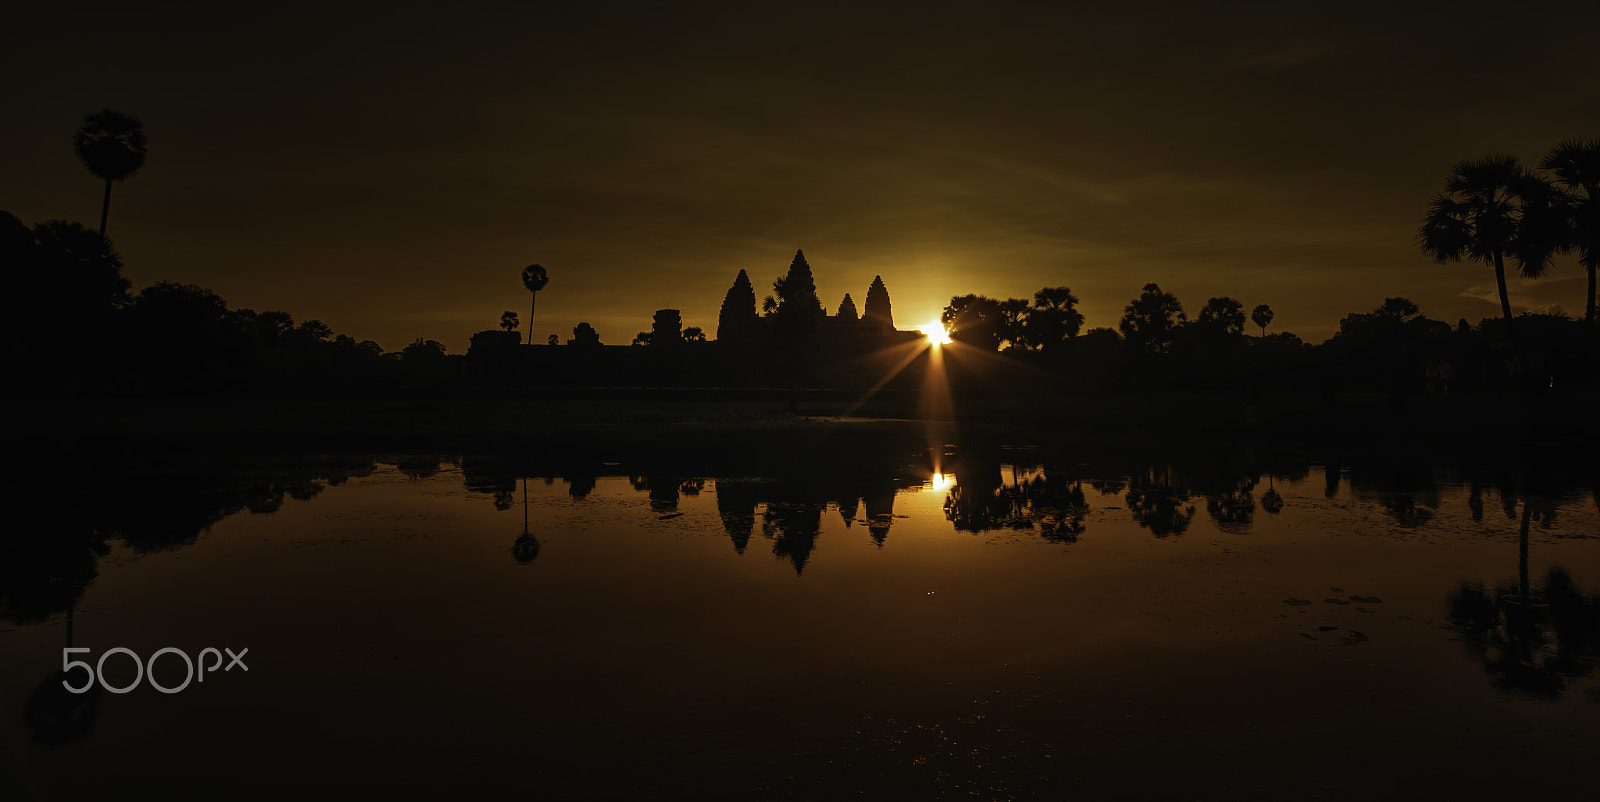 Nikon D5300 + Samyang 14mm F2.8 ED AS IF UMC sample photo. Angkor wat photography